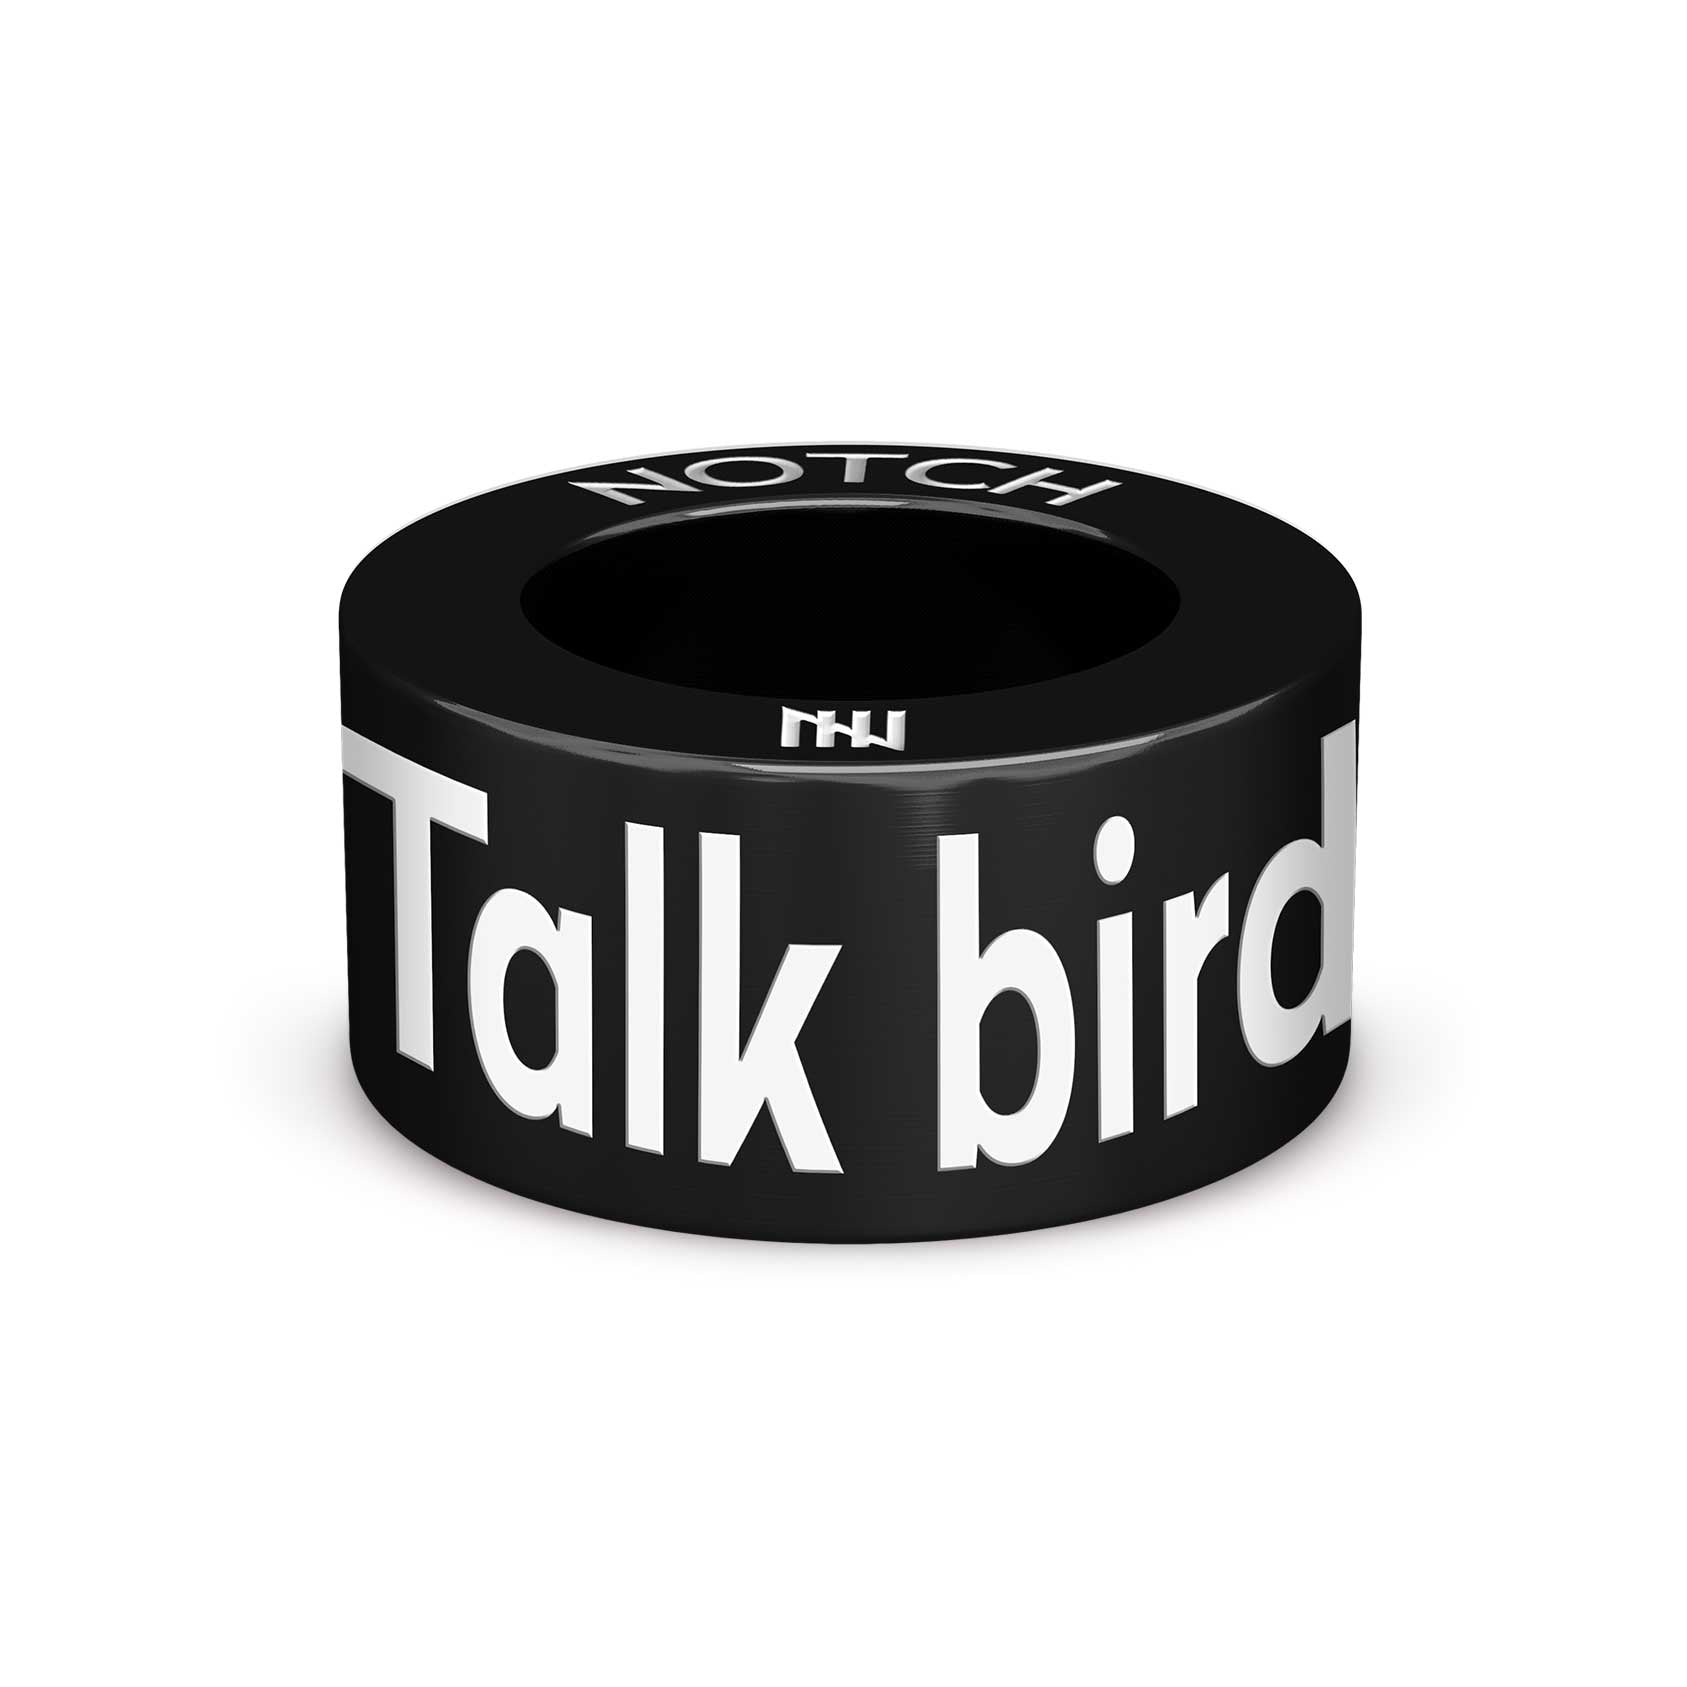 Talk birdie to me Notch Charm